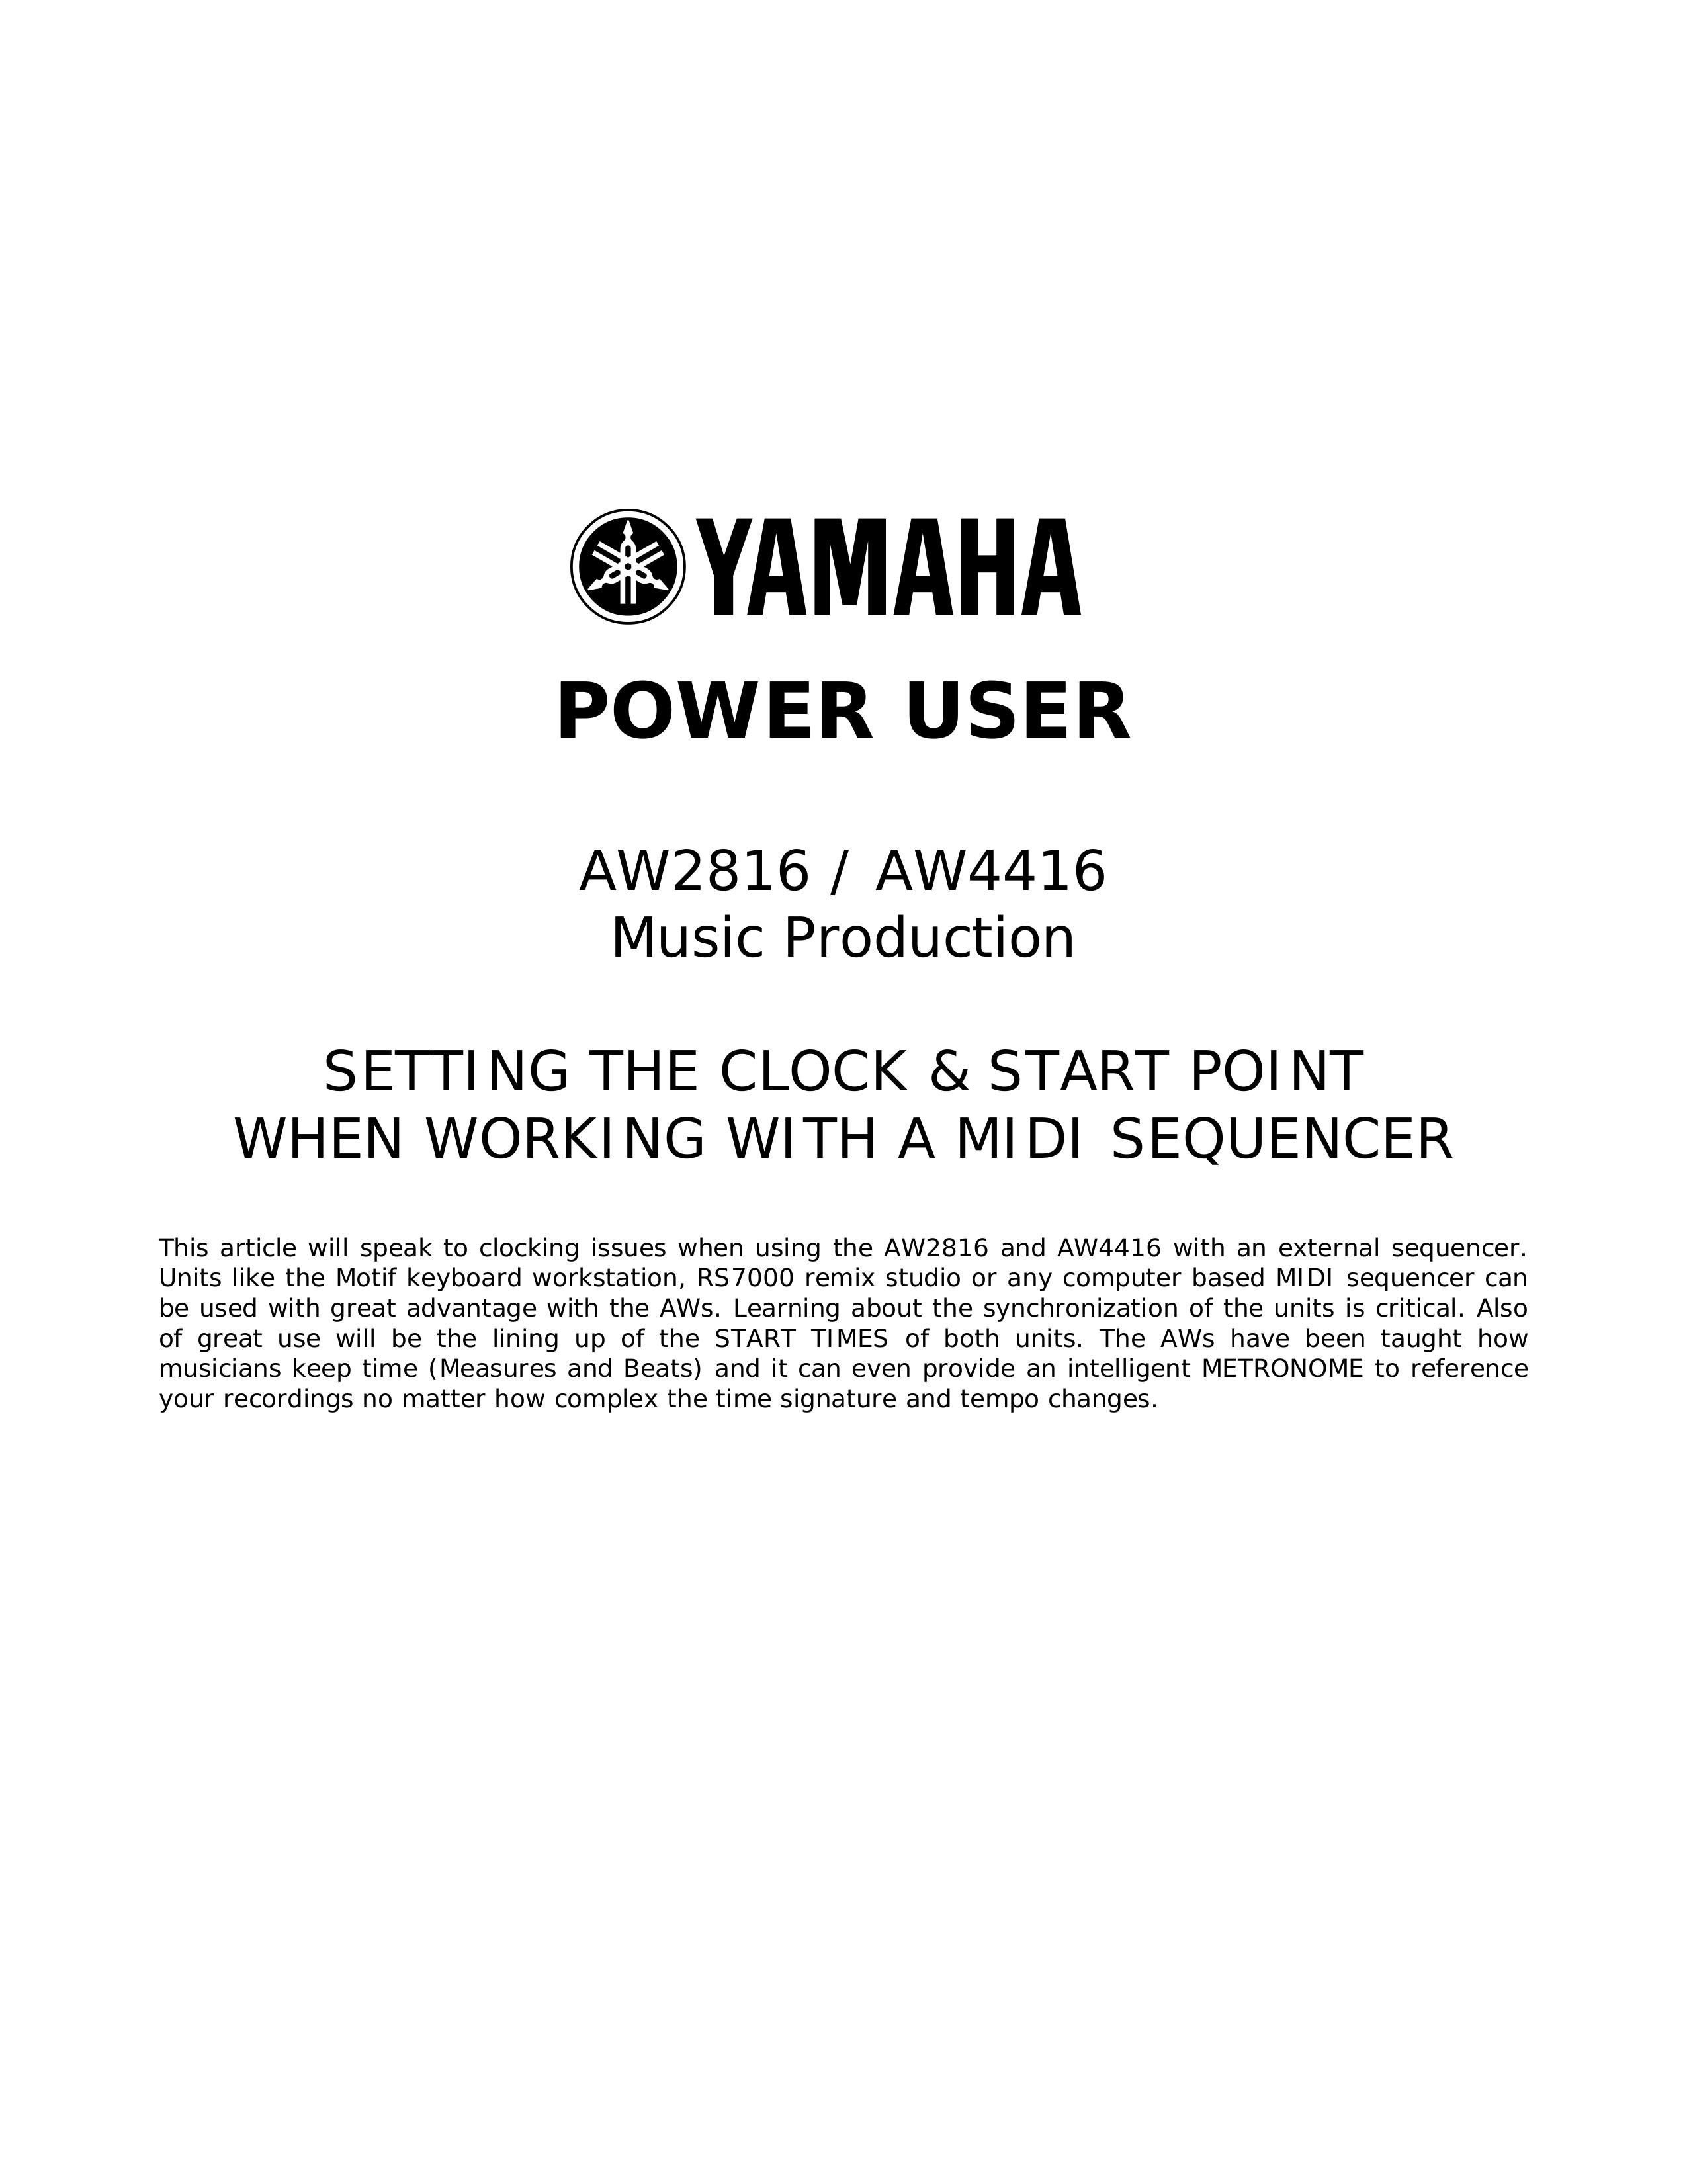 Yamaha AW2816 Music Mixer User Manual